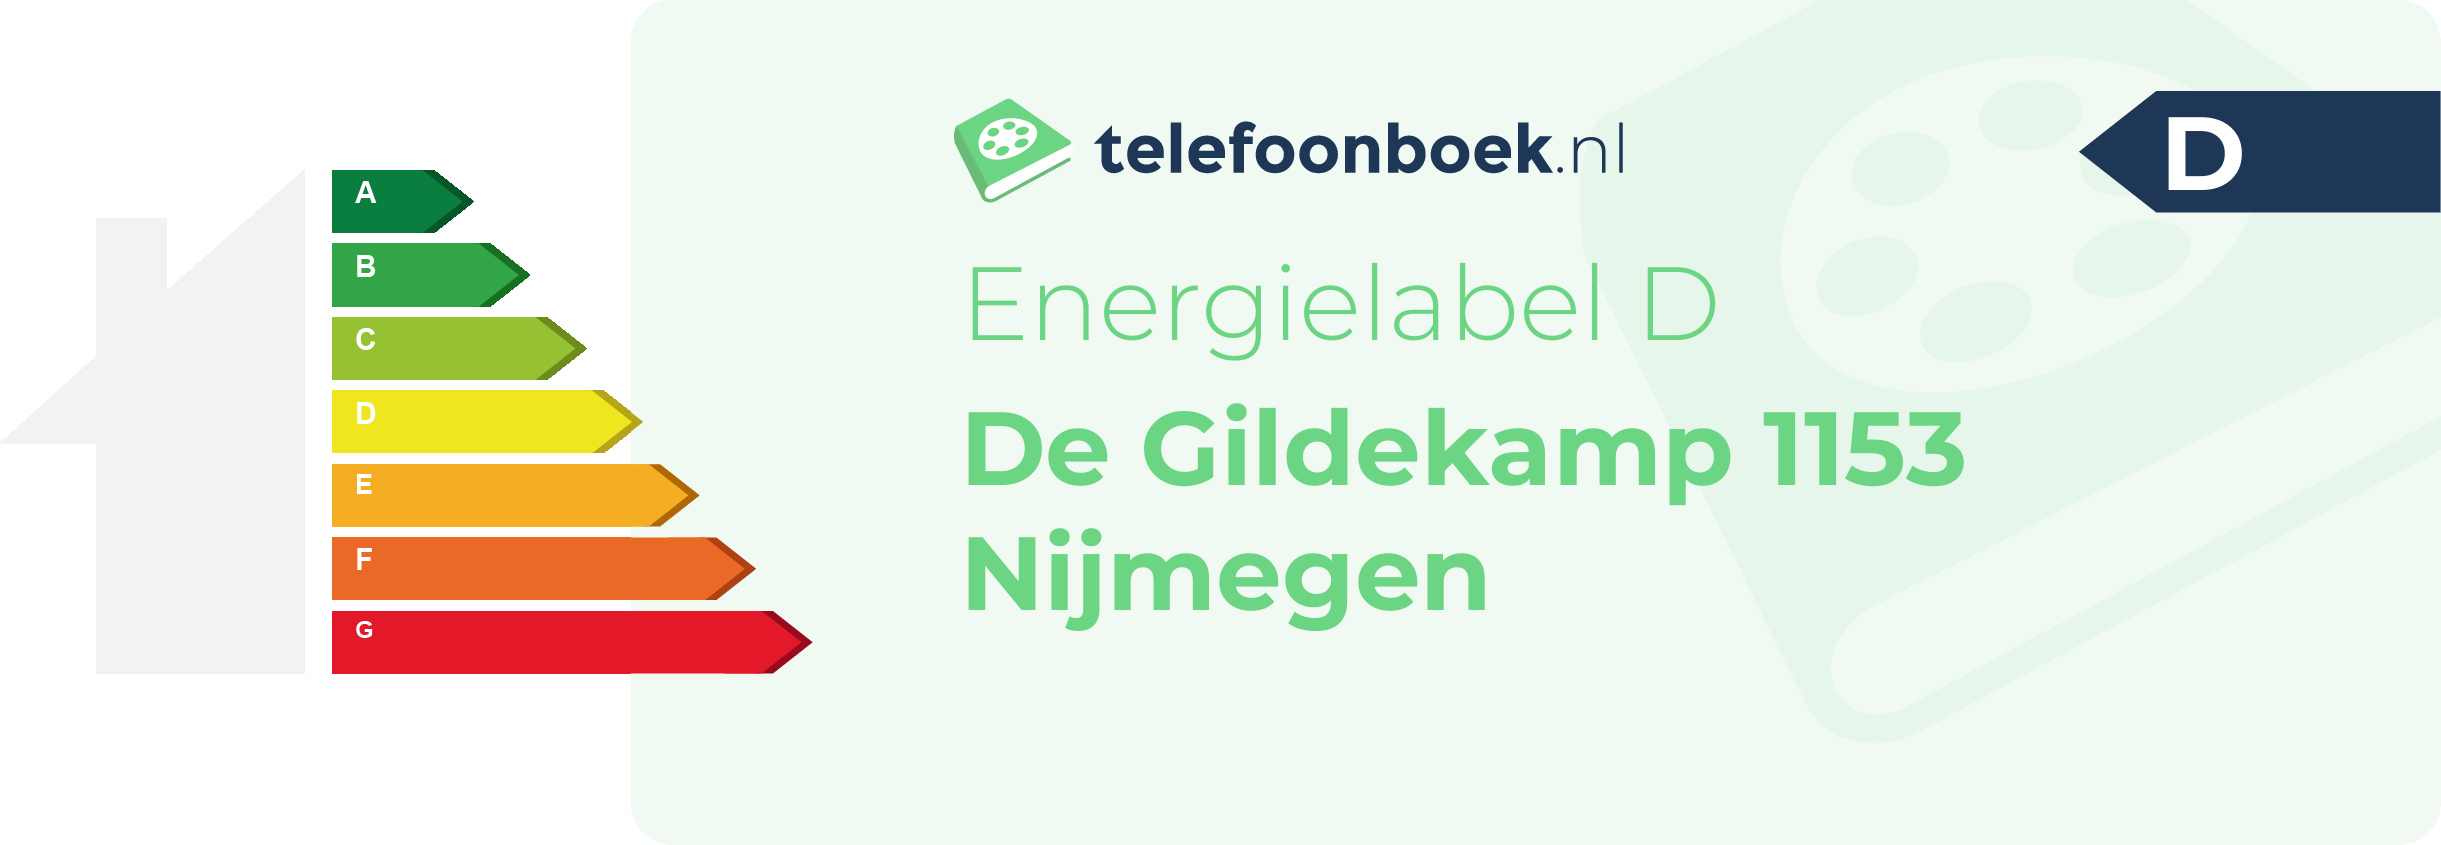 Energielabel De Gildekamp 1153 Nijmegen